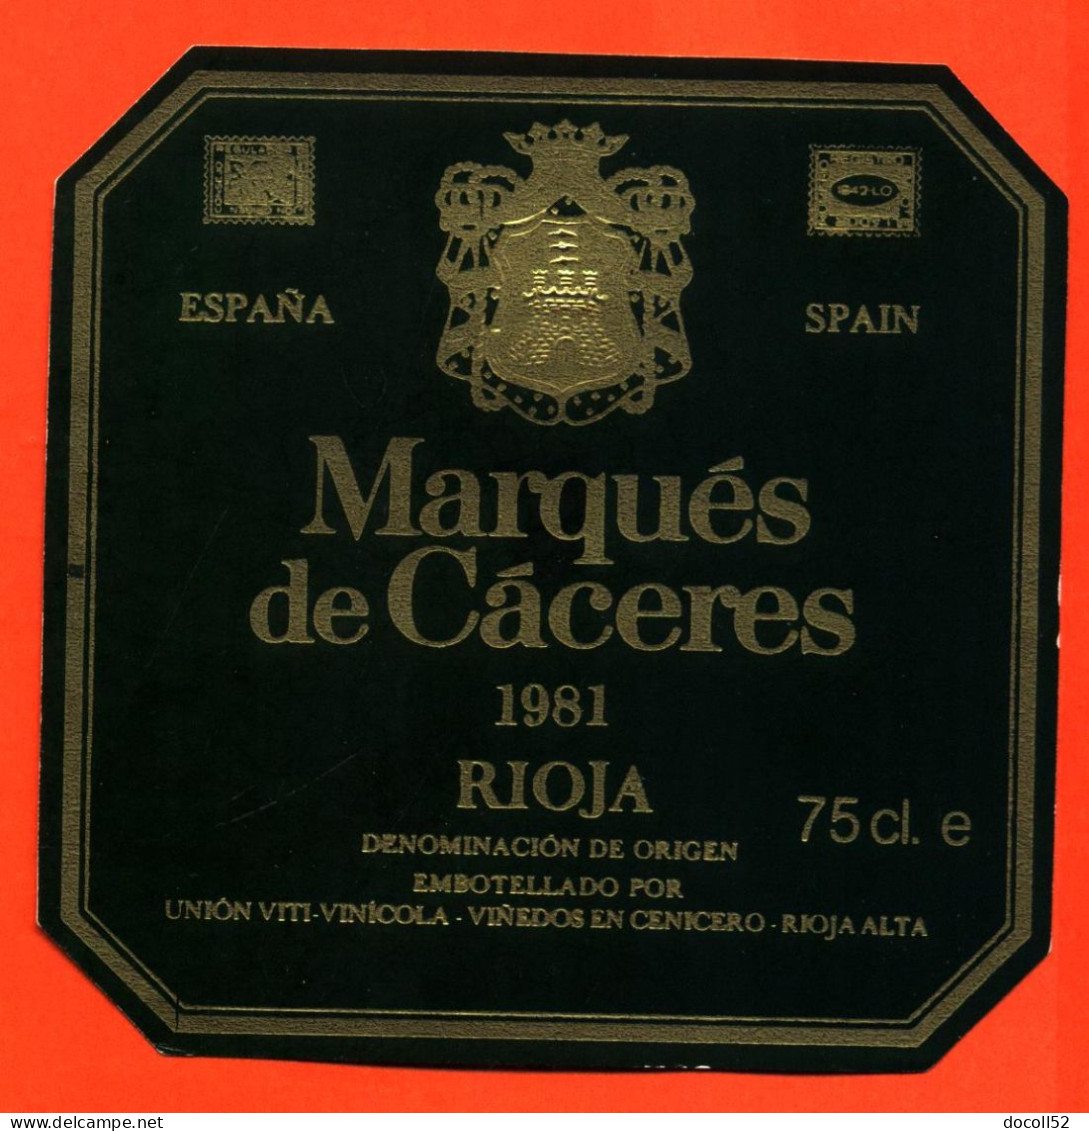 Etiquette Neuve De Vin D'espagne - Spain Marqués De Caceres Rioja 1981 à Vinedos En Cenicero - 75cl - Vin De Pays D'Oc